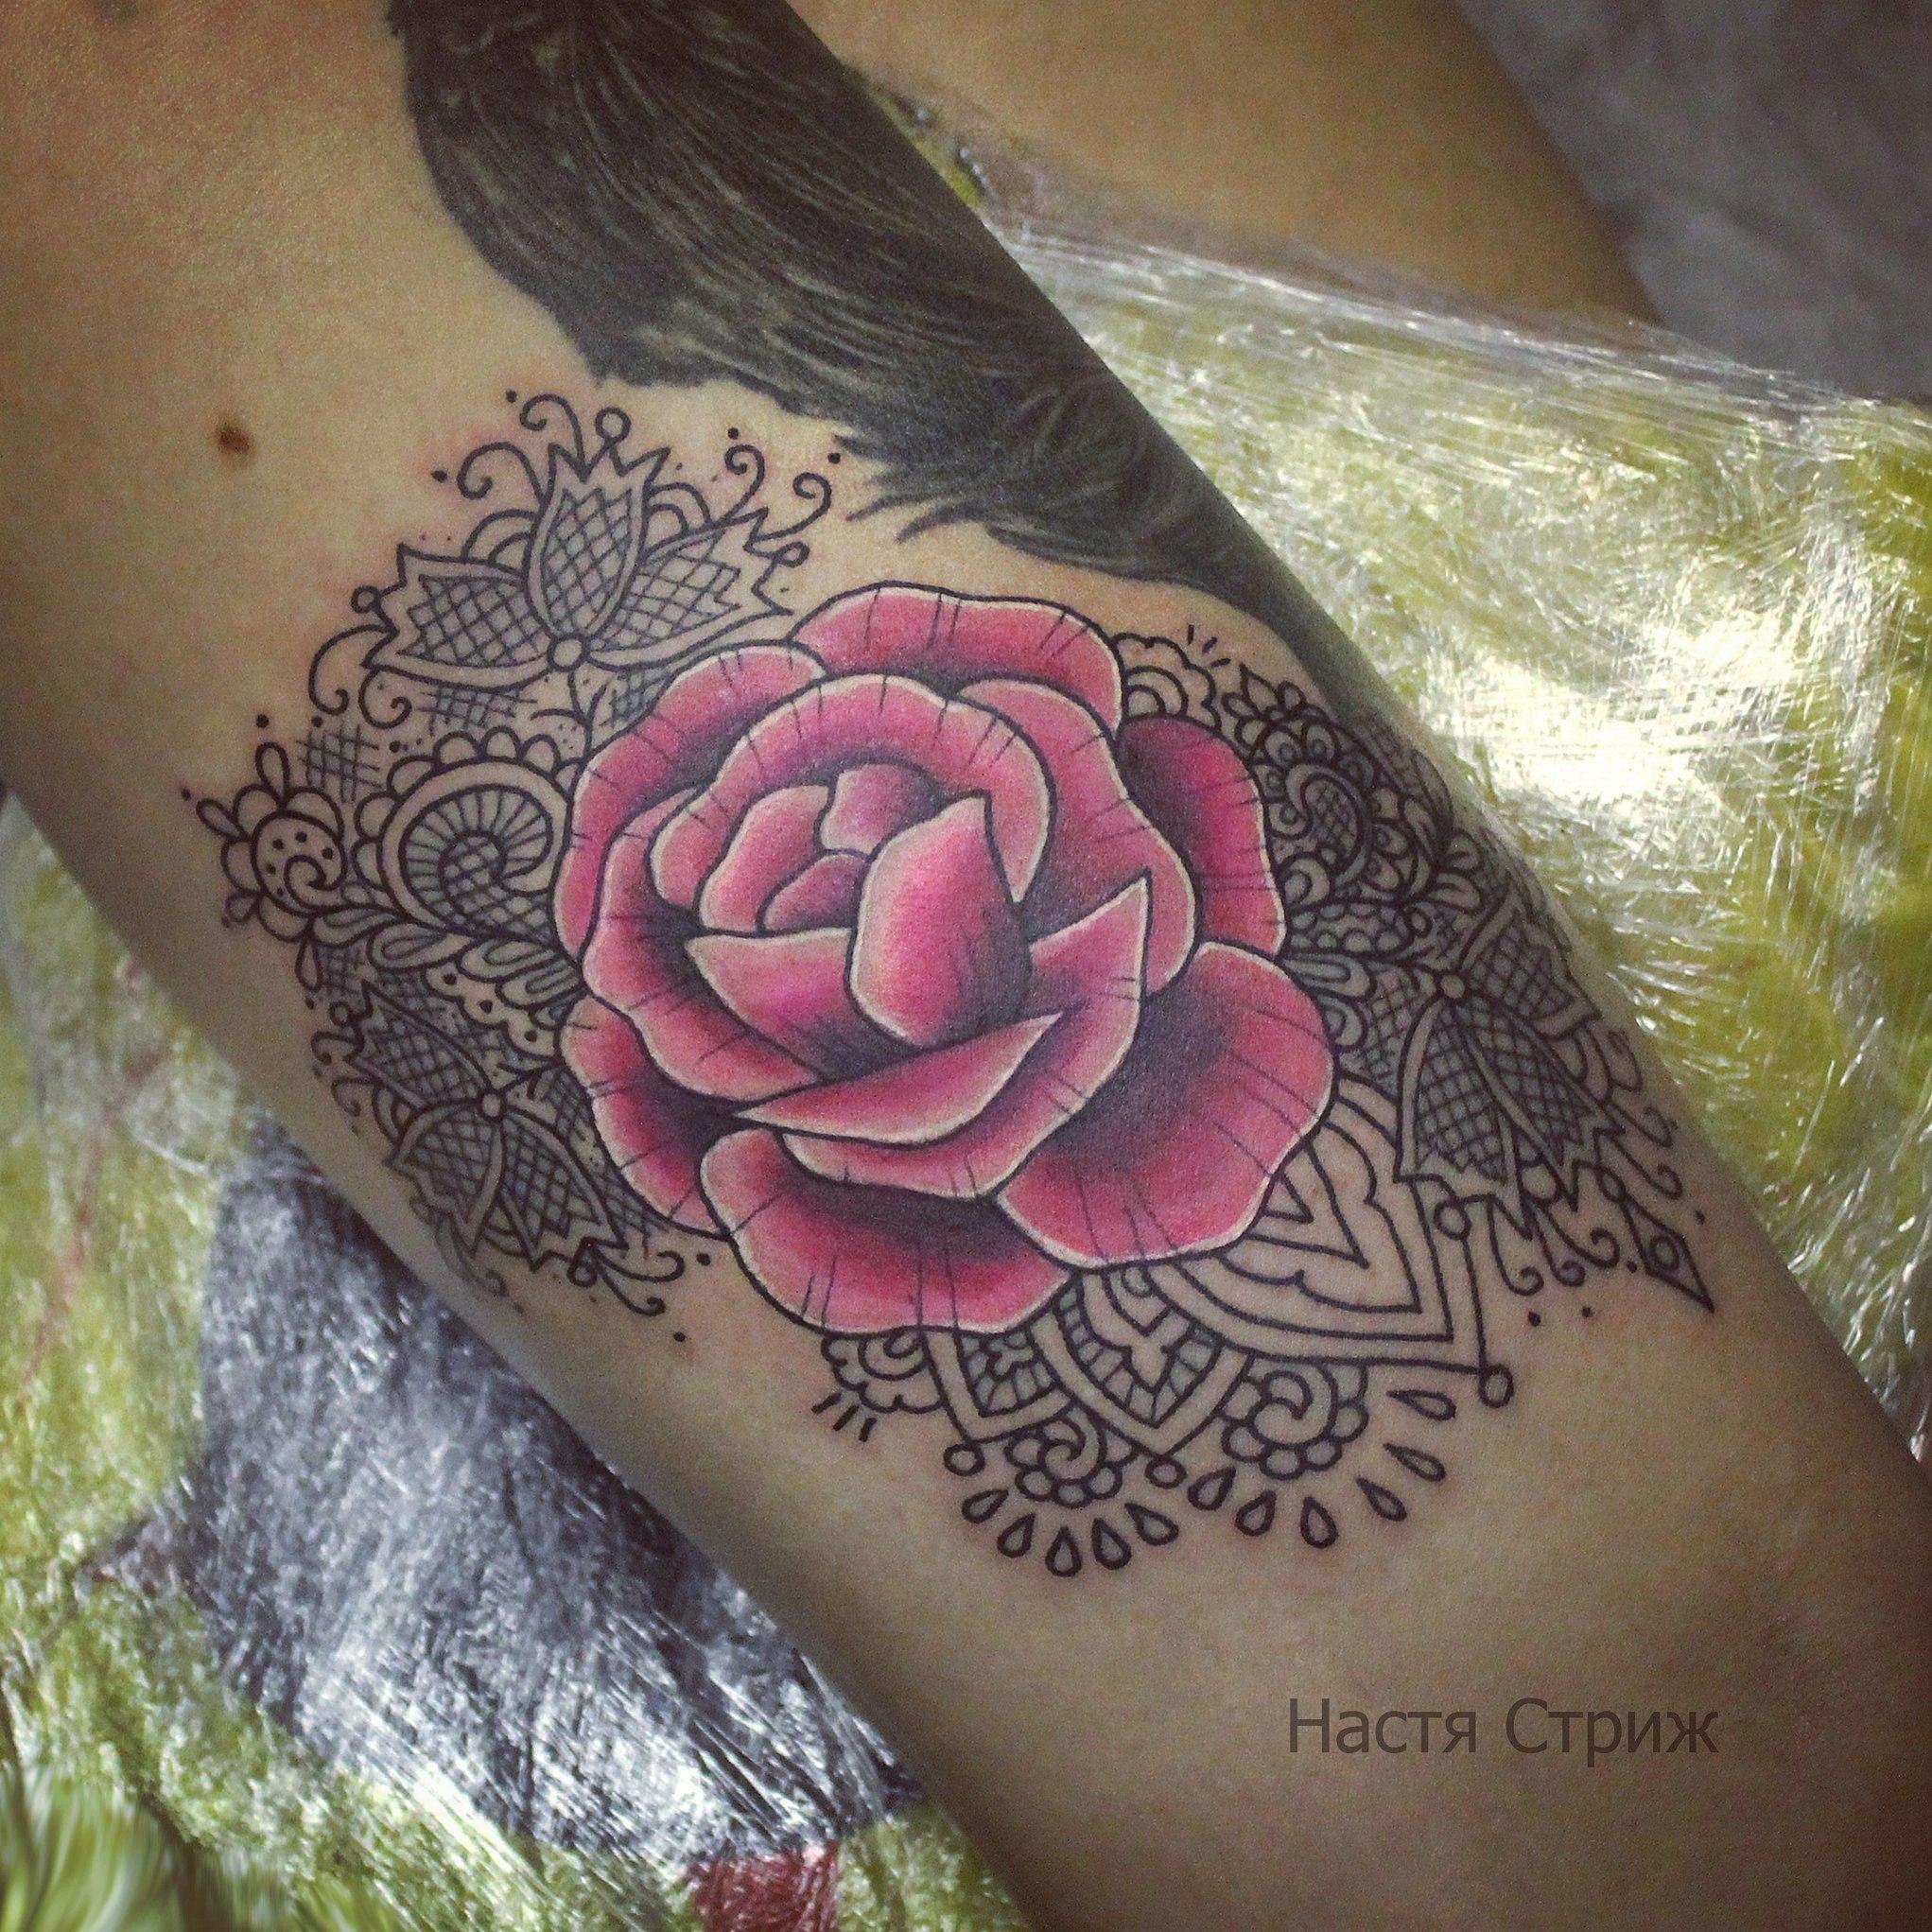 Художественная татуировка "Цветок". Мастер Настя Стриж.